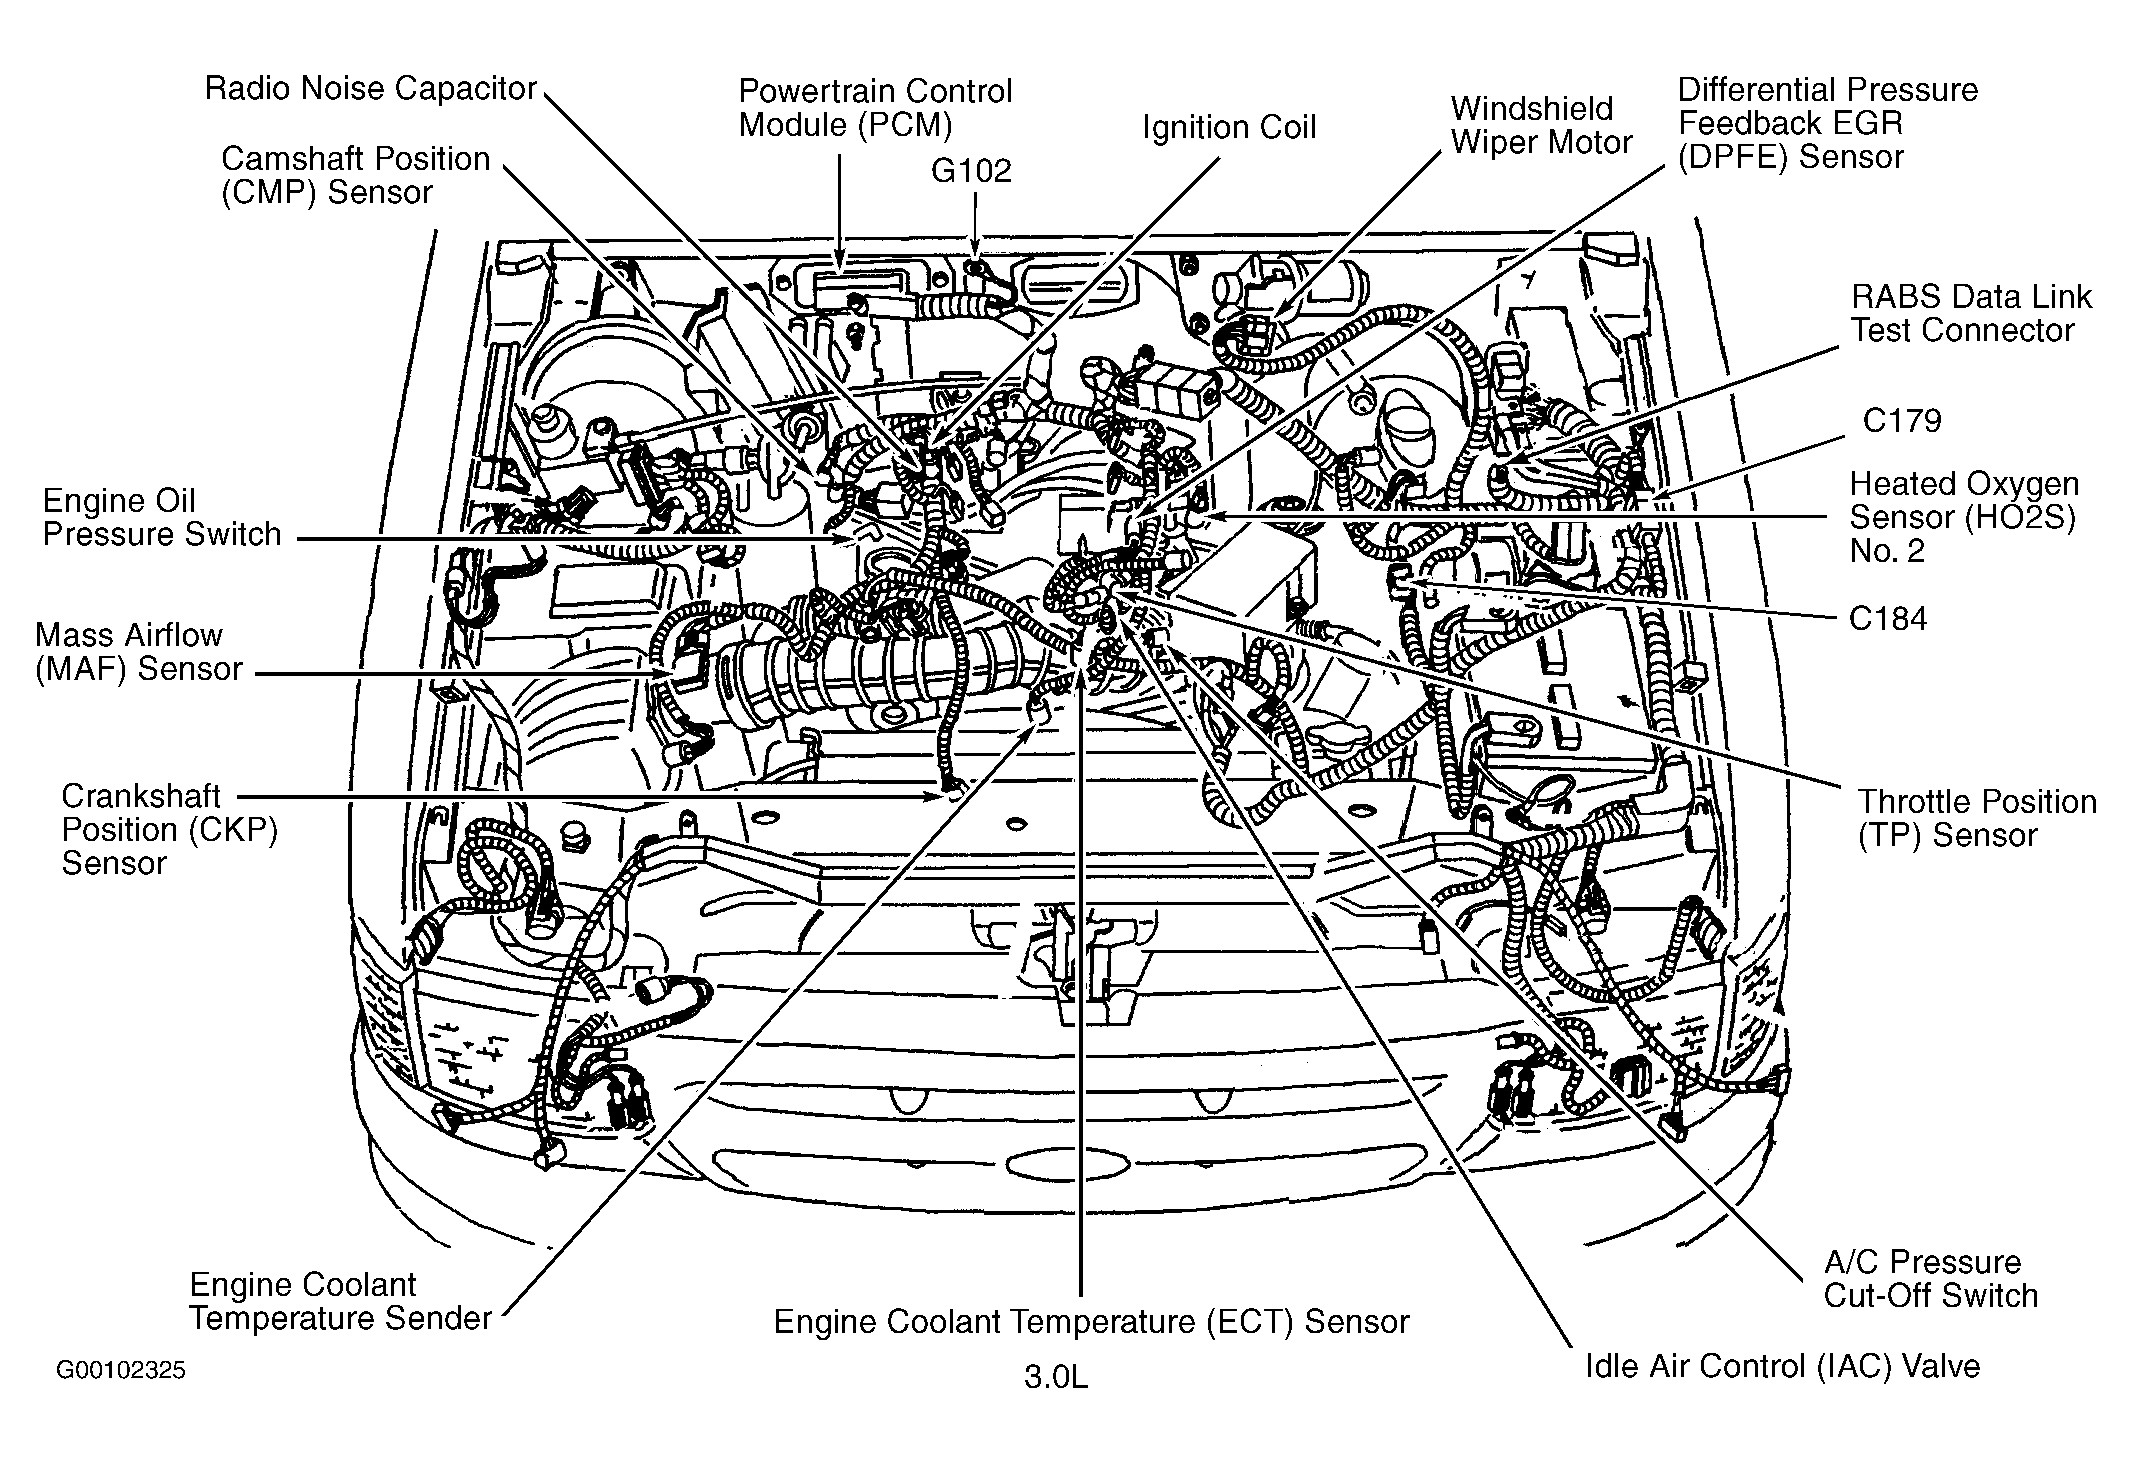 97 ford Taurus Engine Diagram ford Ranger 3 0 V6 Engine Diagram ford Wiring Diagrams Instructions Of 97 ford Taurus Engine Diagram